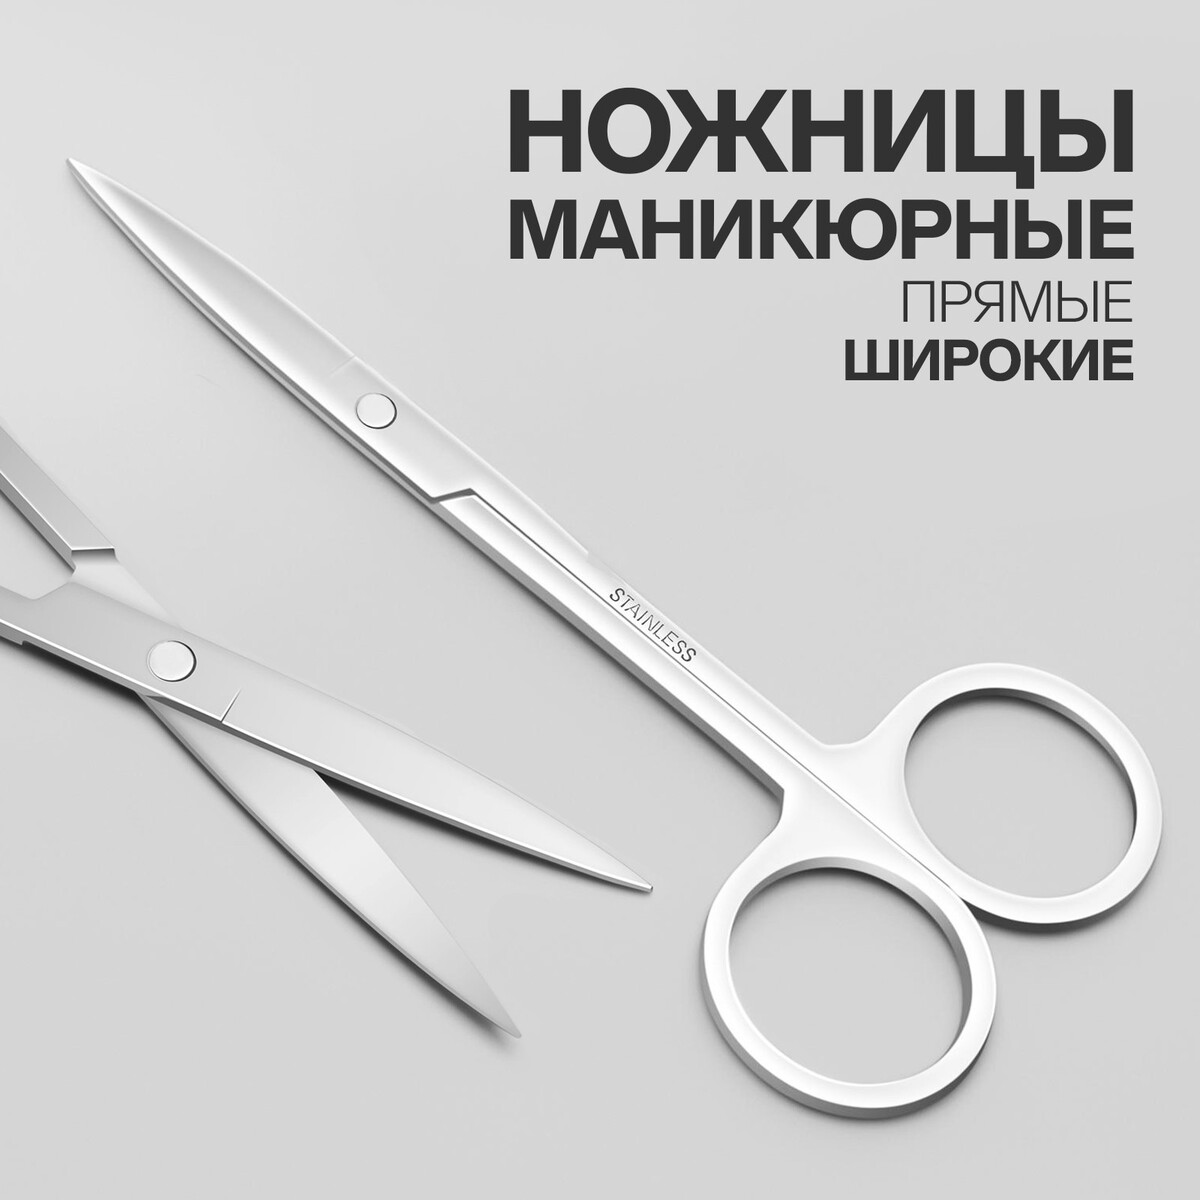 Ножницы маникюрные, прямые, широкие, 12 см, цвет серебристый ножницы маникюрные прямые узкие 10 5 см серебристый